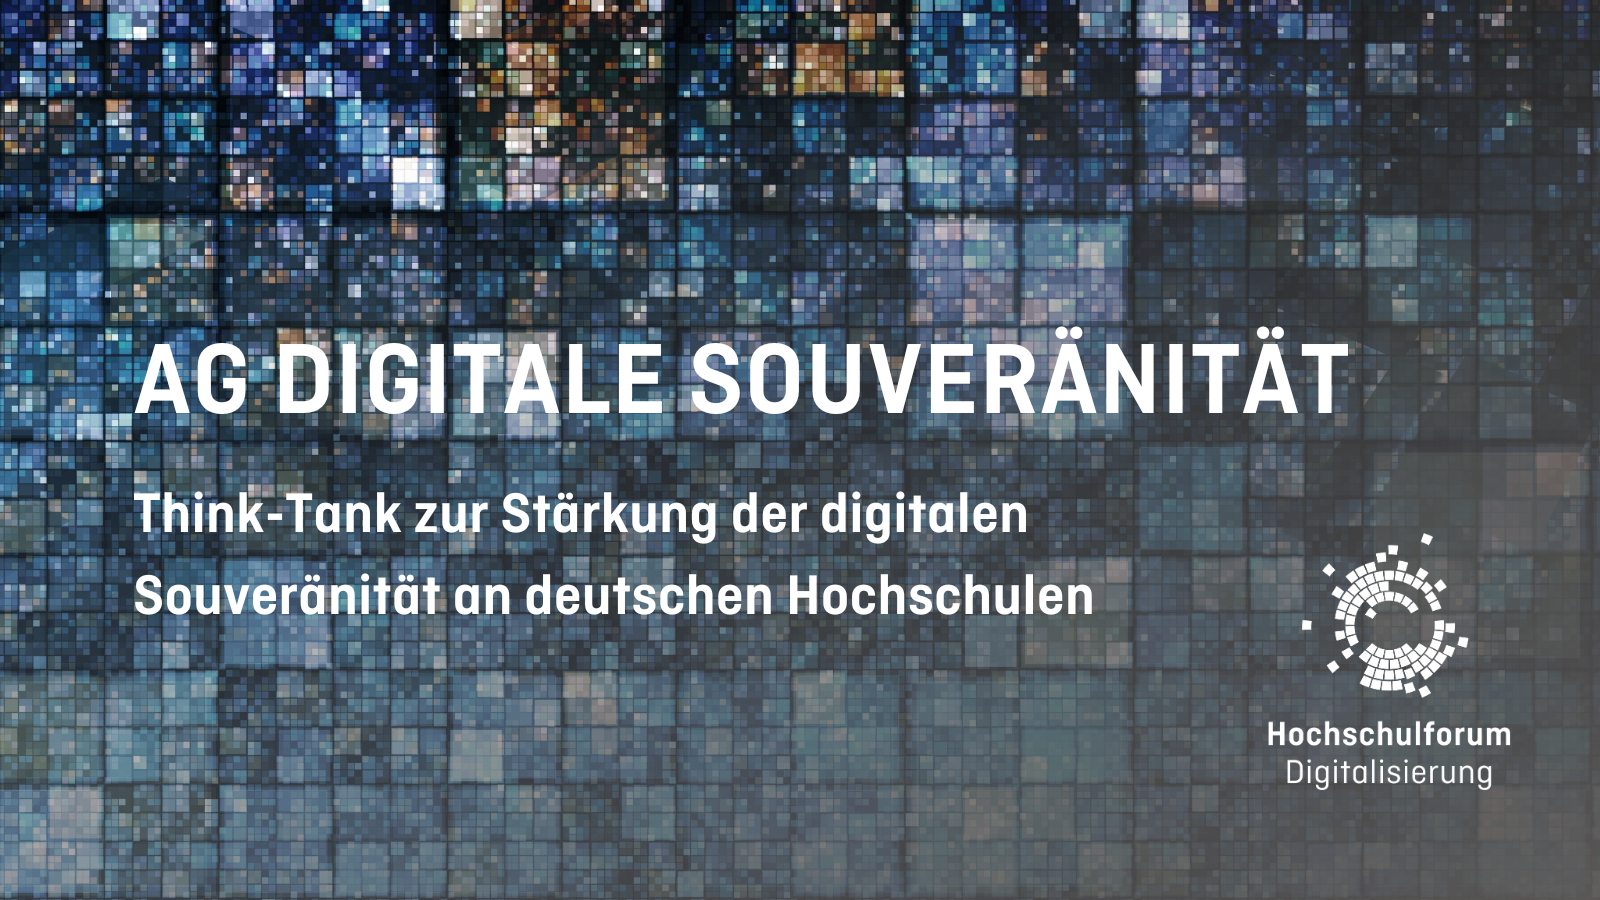 Titelbild: "AG DIGITALE SOUVERÄNITÄT". Untertitel: "Think-Tank zur Stärkung der digitalen Souveränität an deutschen Hochschulen"